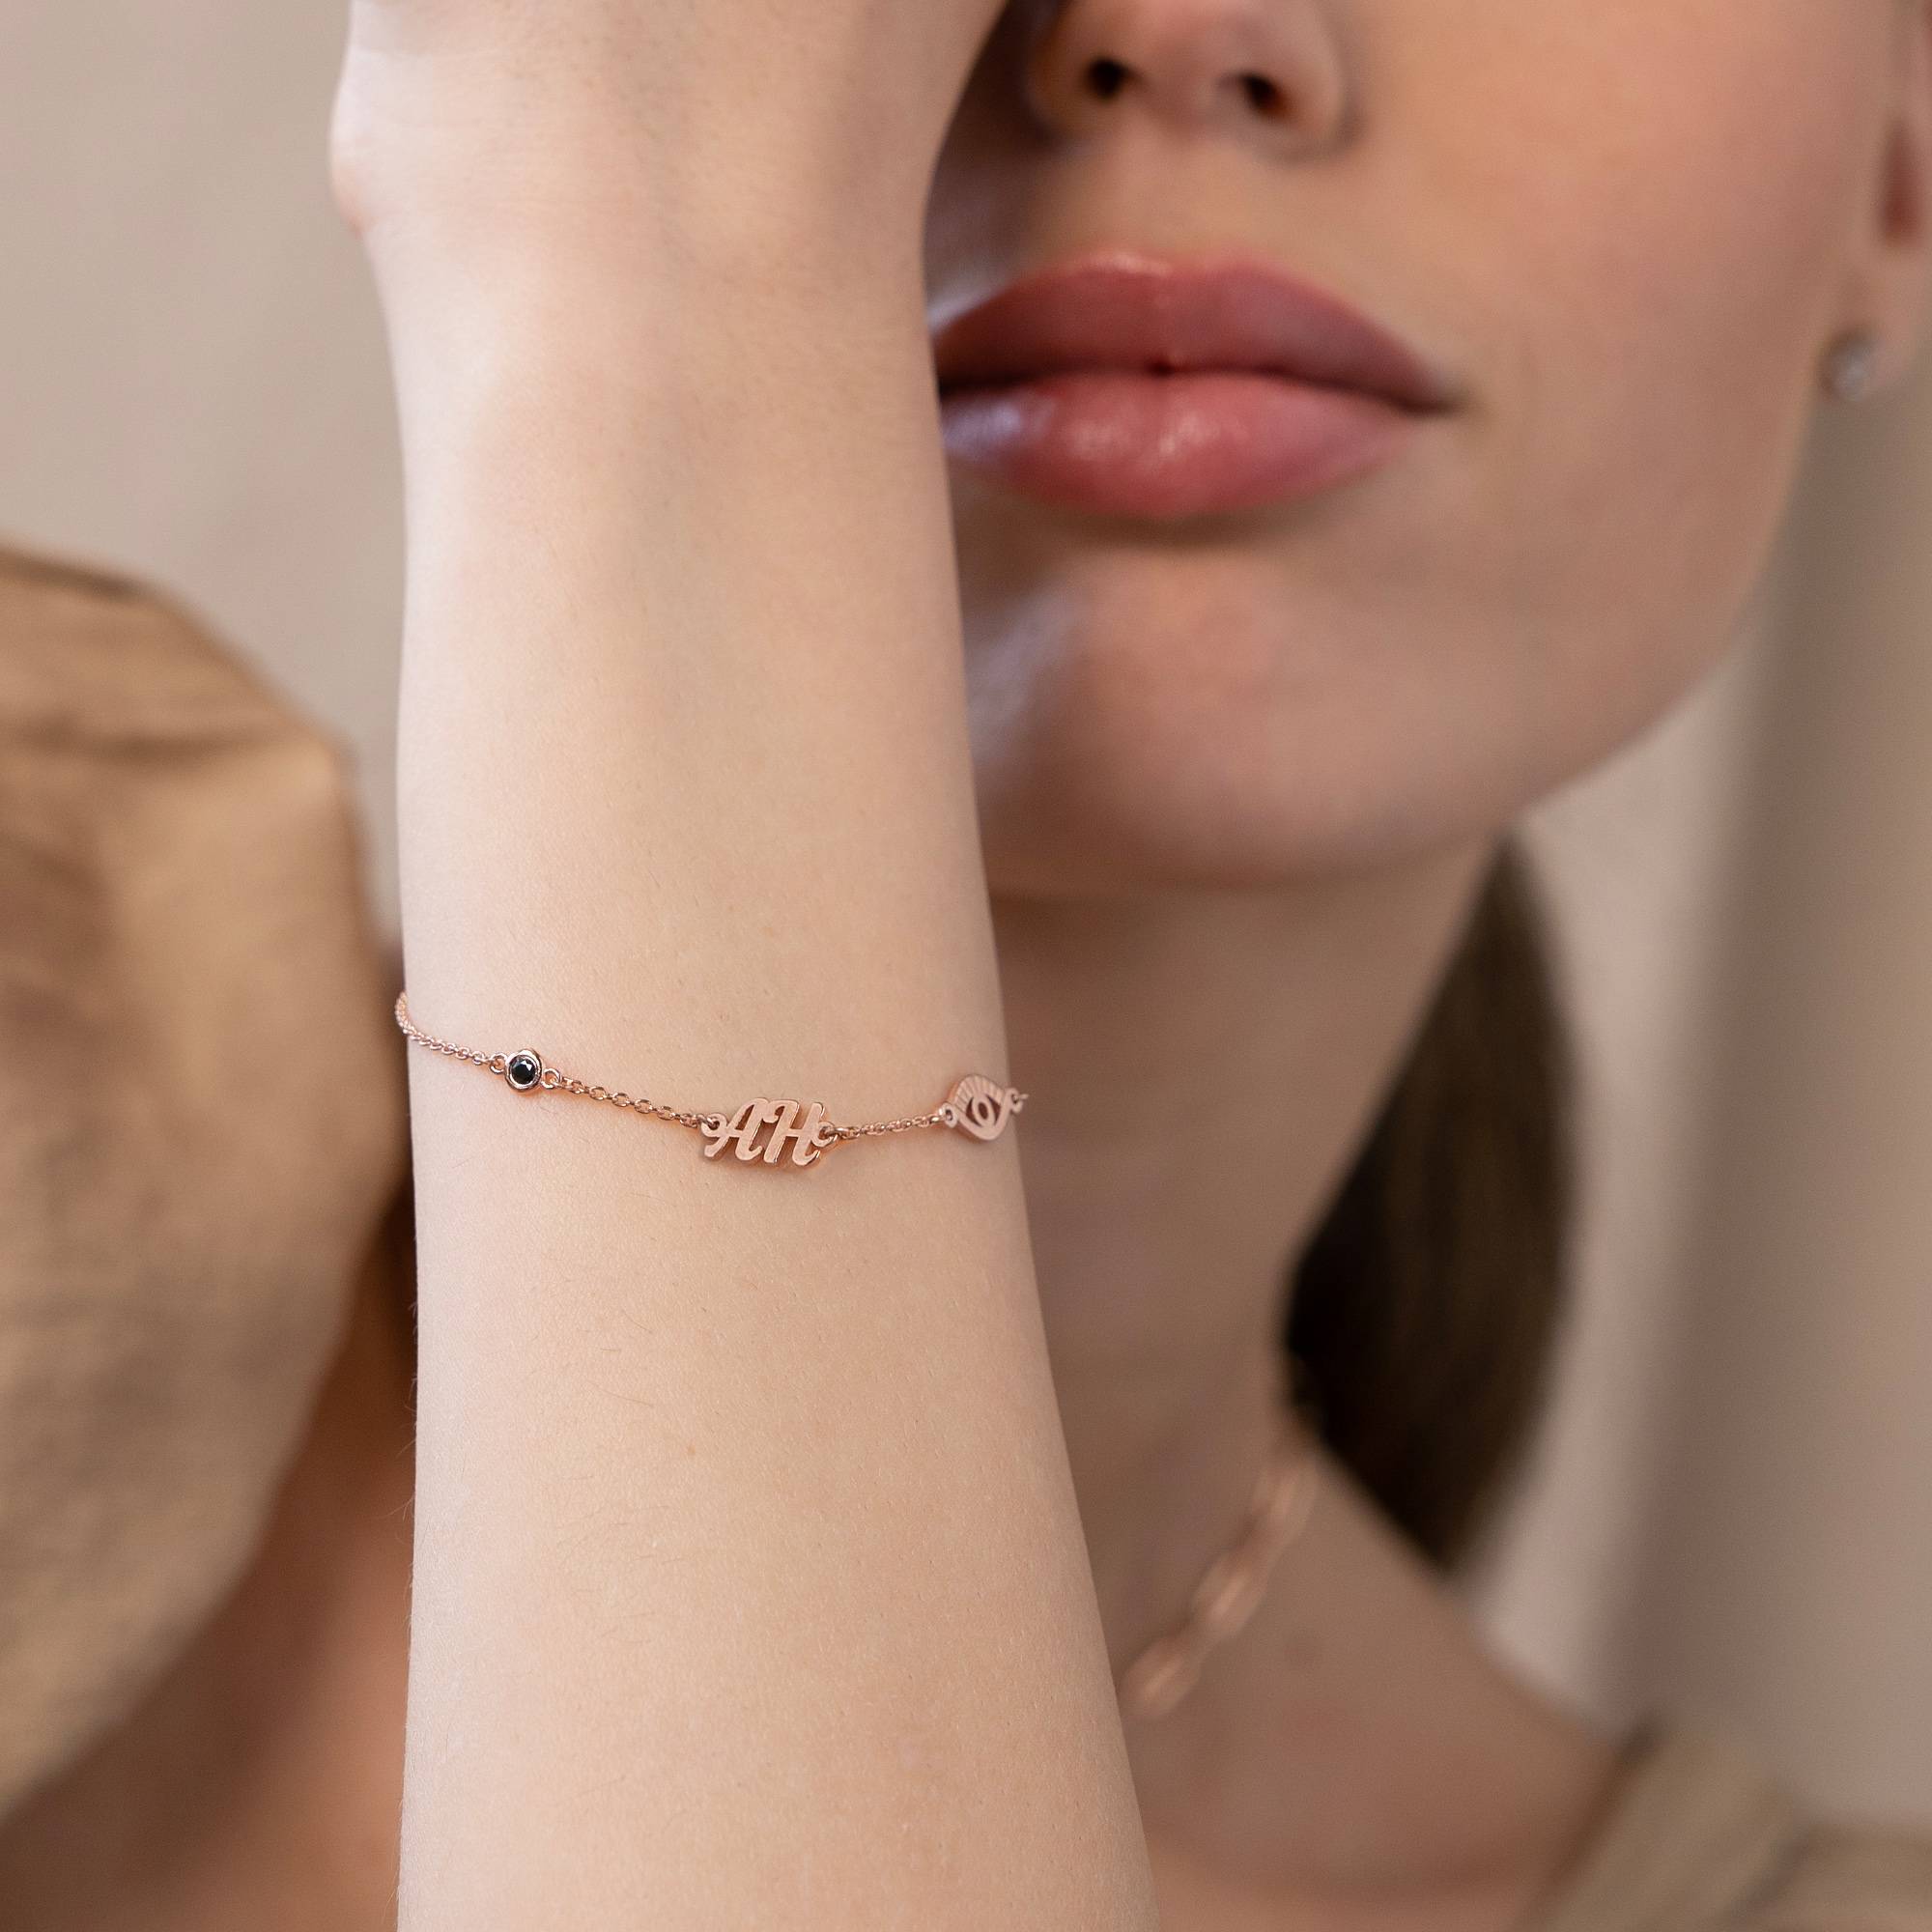 18k Rosé Vergulde Bridget Boze Oog Initiaal Armband/Enkelbandje met Edelsteen-1 Productfoto